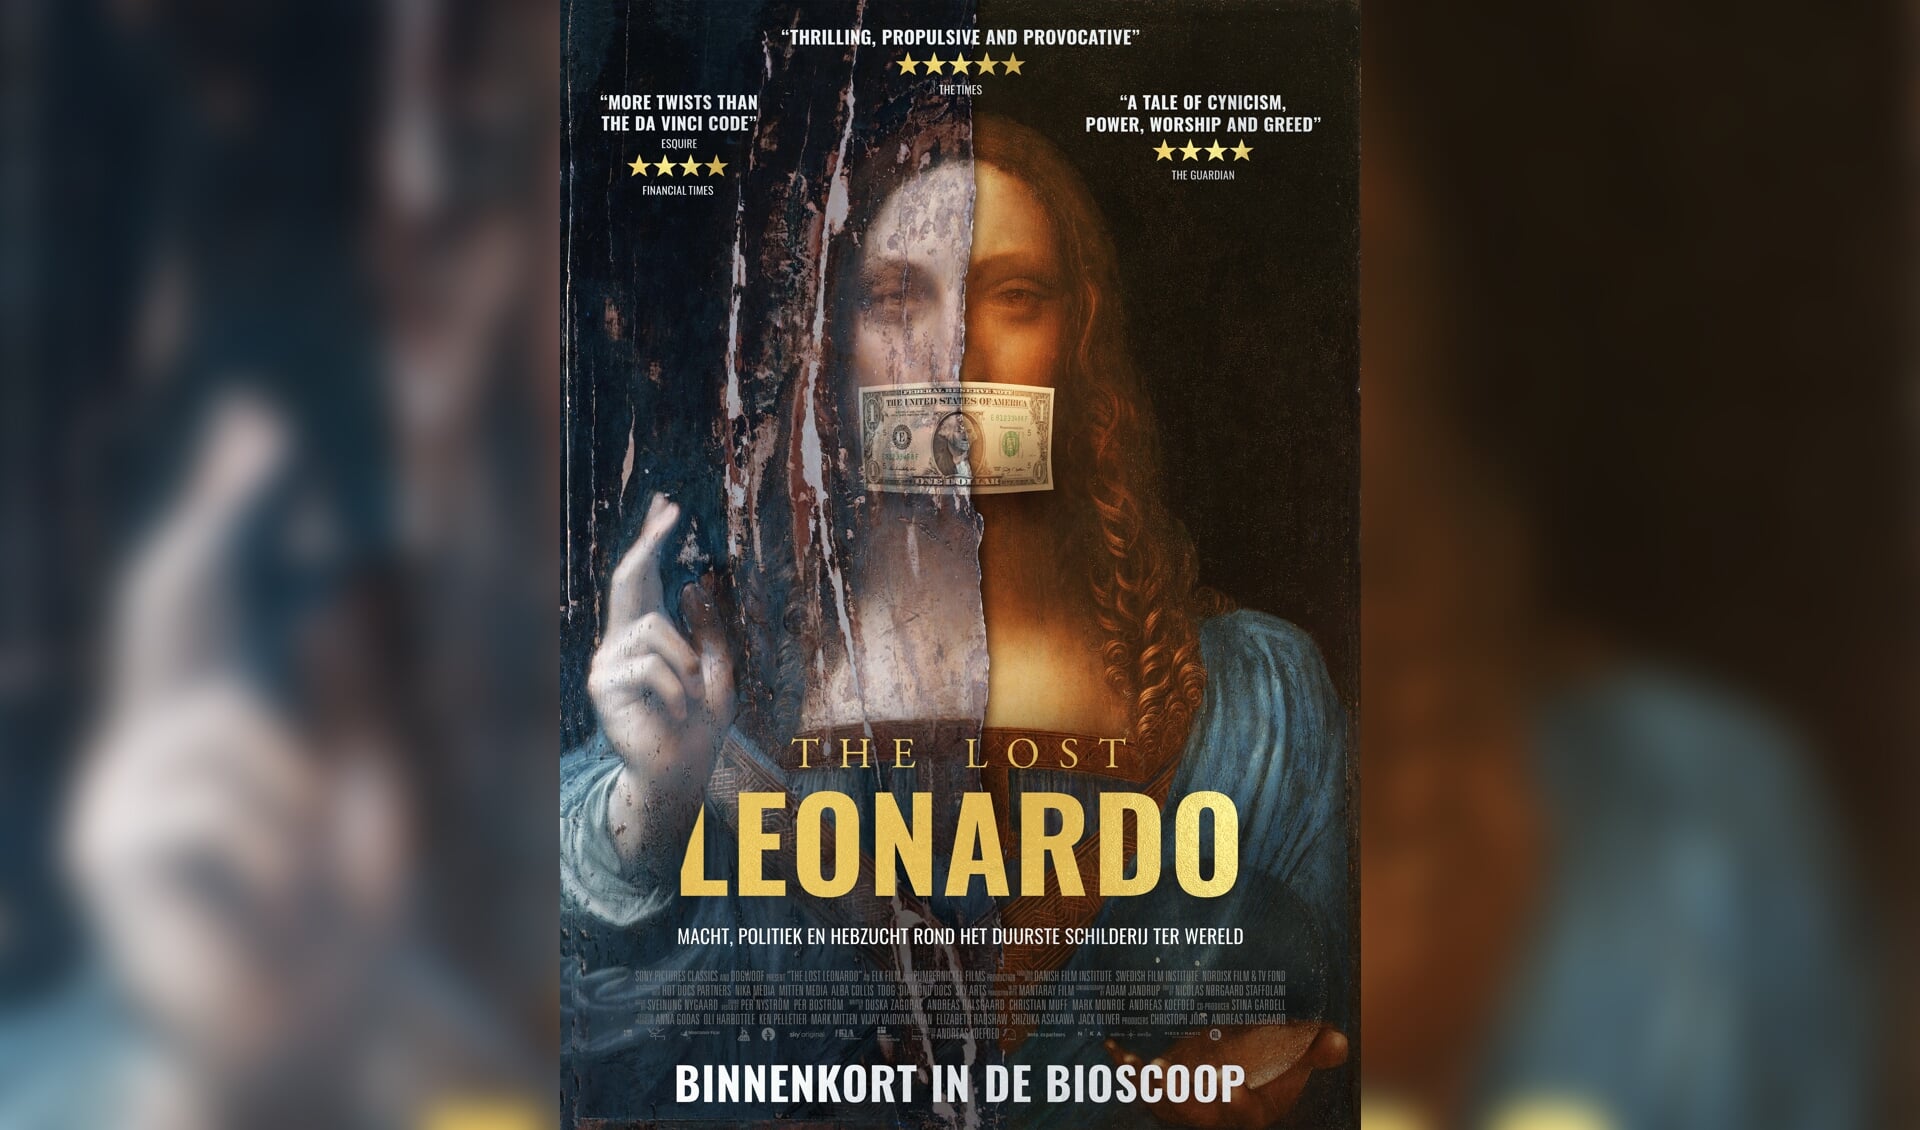 The Lost Leonardo van de Deense filmmaker Andreas Koefoed vertelt het onwaarschijnlijke verhaal achter de Salvator Mundi.